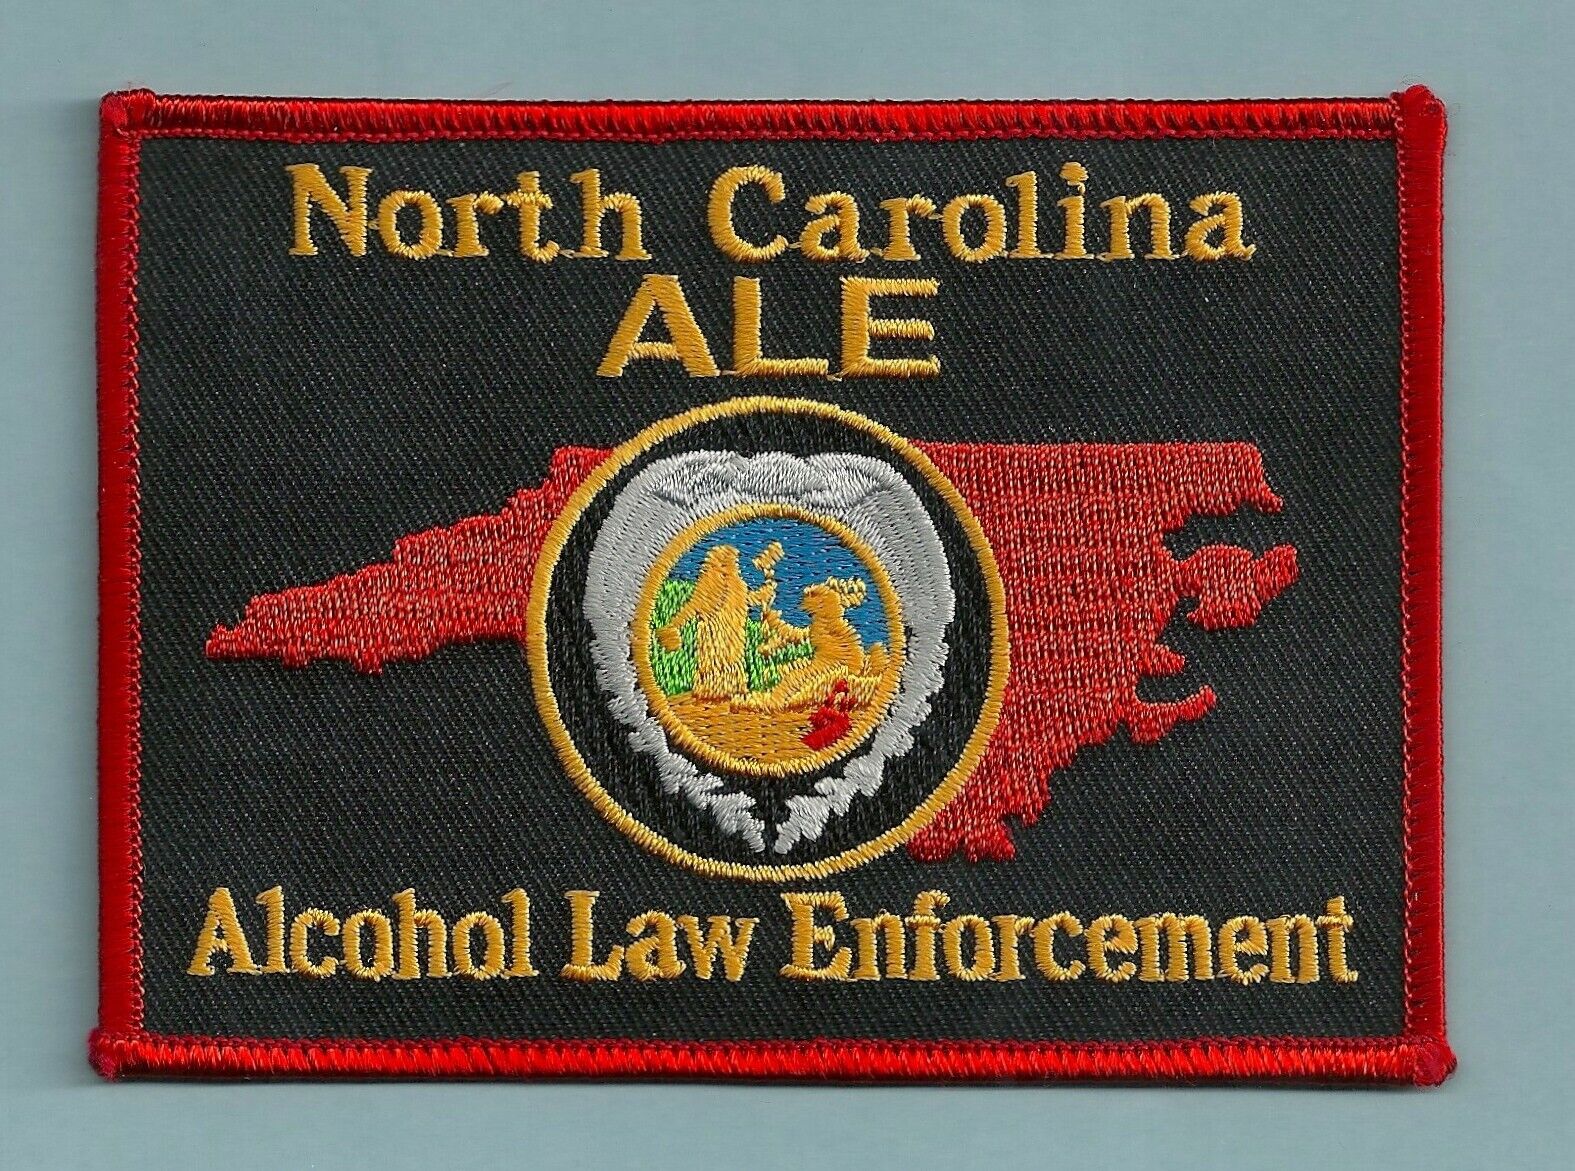 NORTH CAROLINA ALE ALCOHOL LAW ENFORCEMENT SHOULDER PATCH